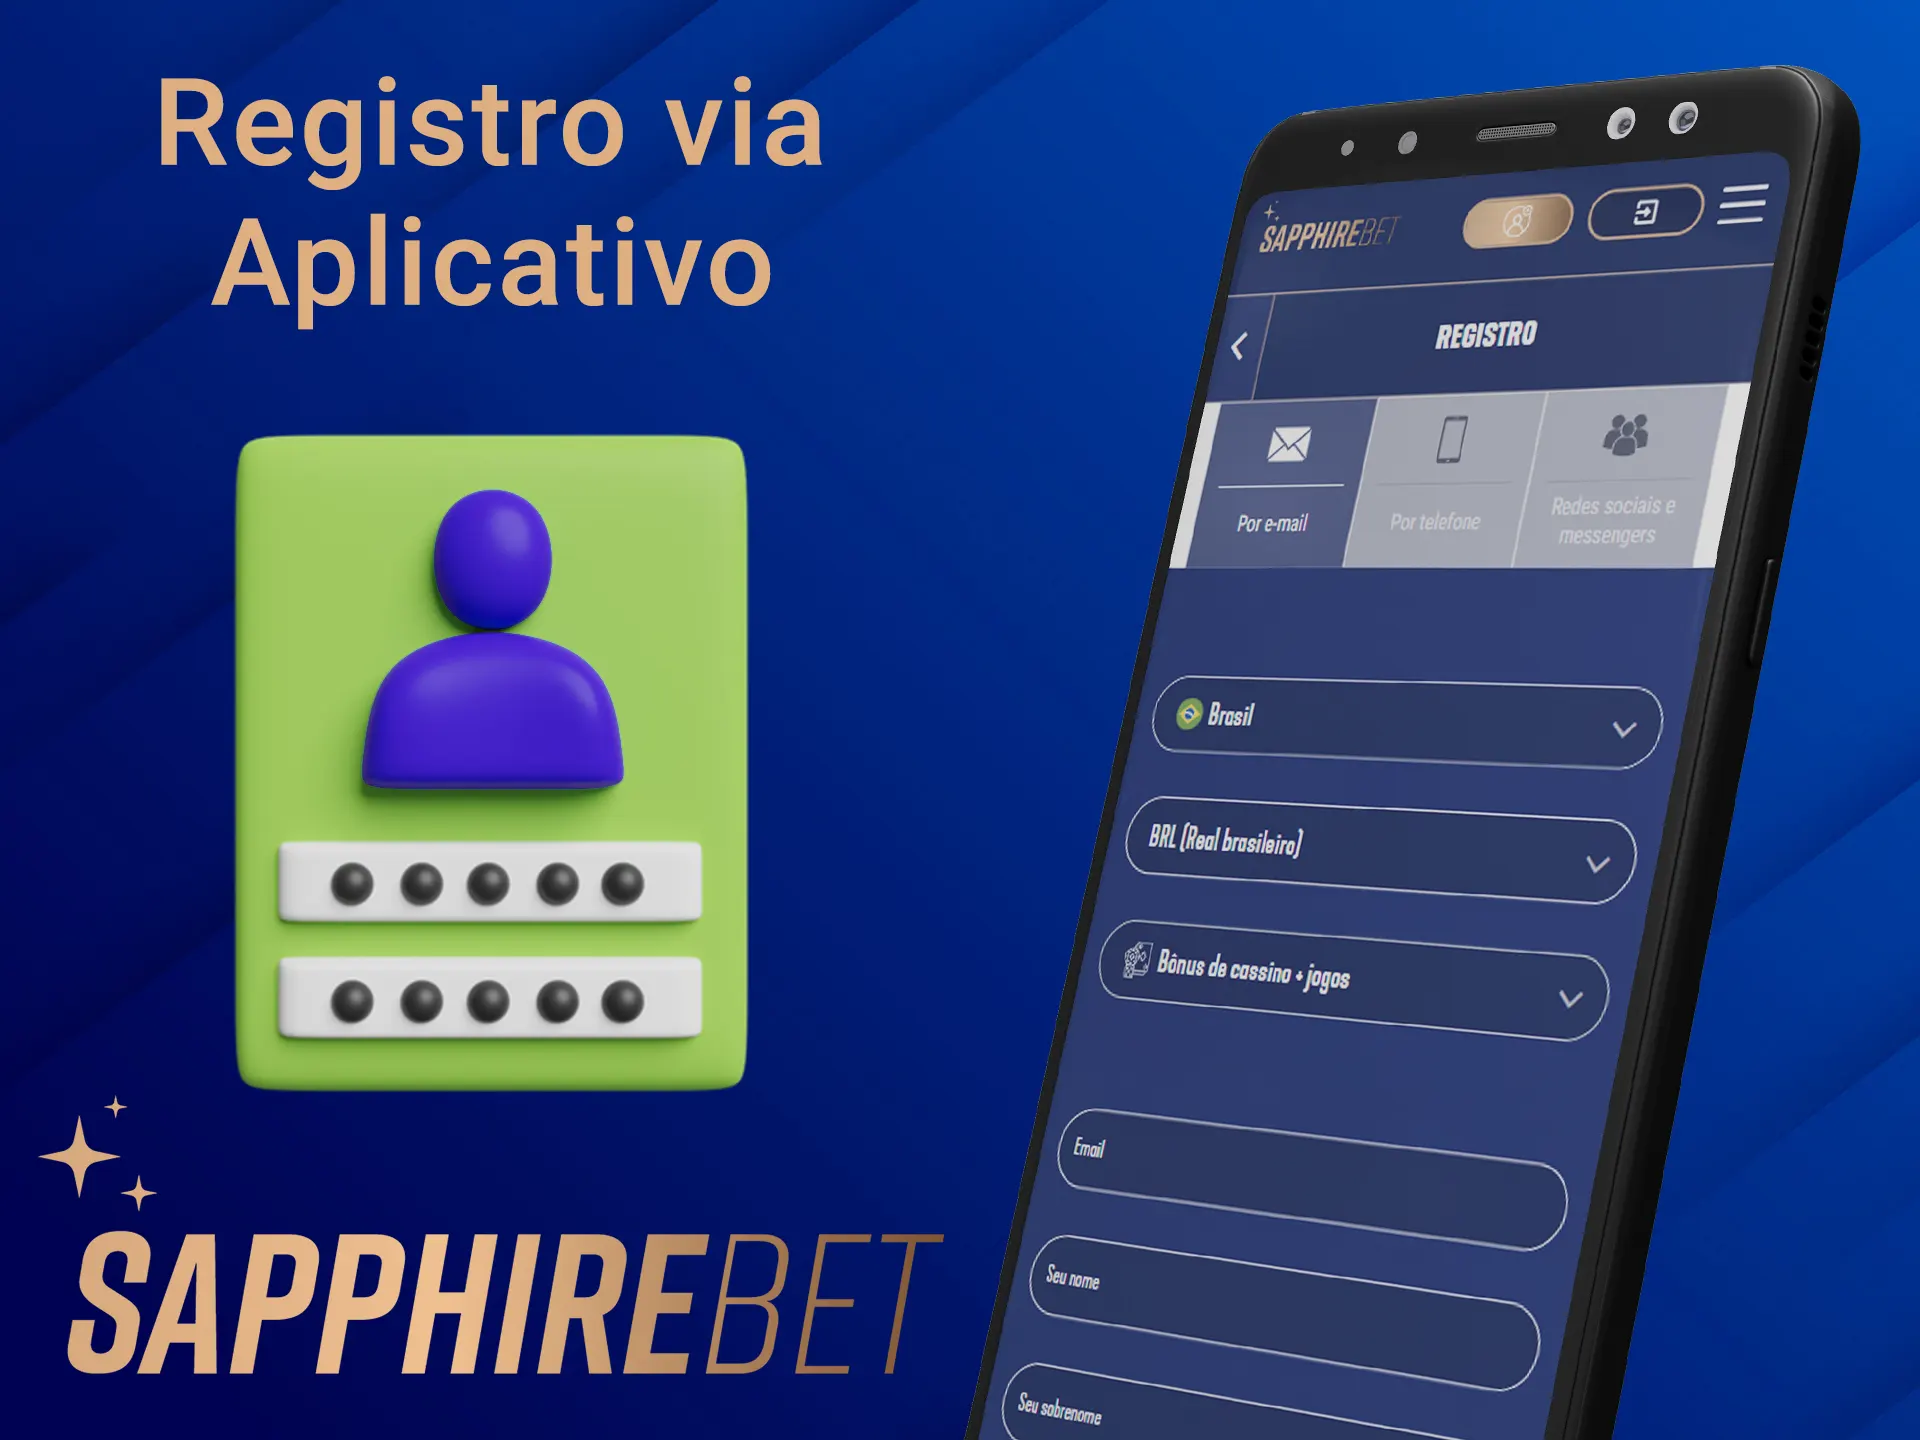 Registre uma nova conta no aplicativo Sapphirebet.